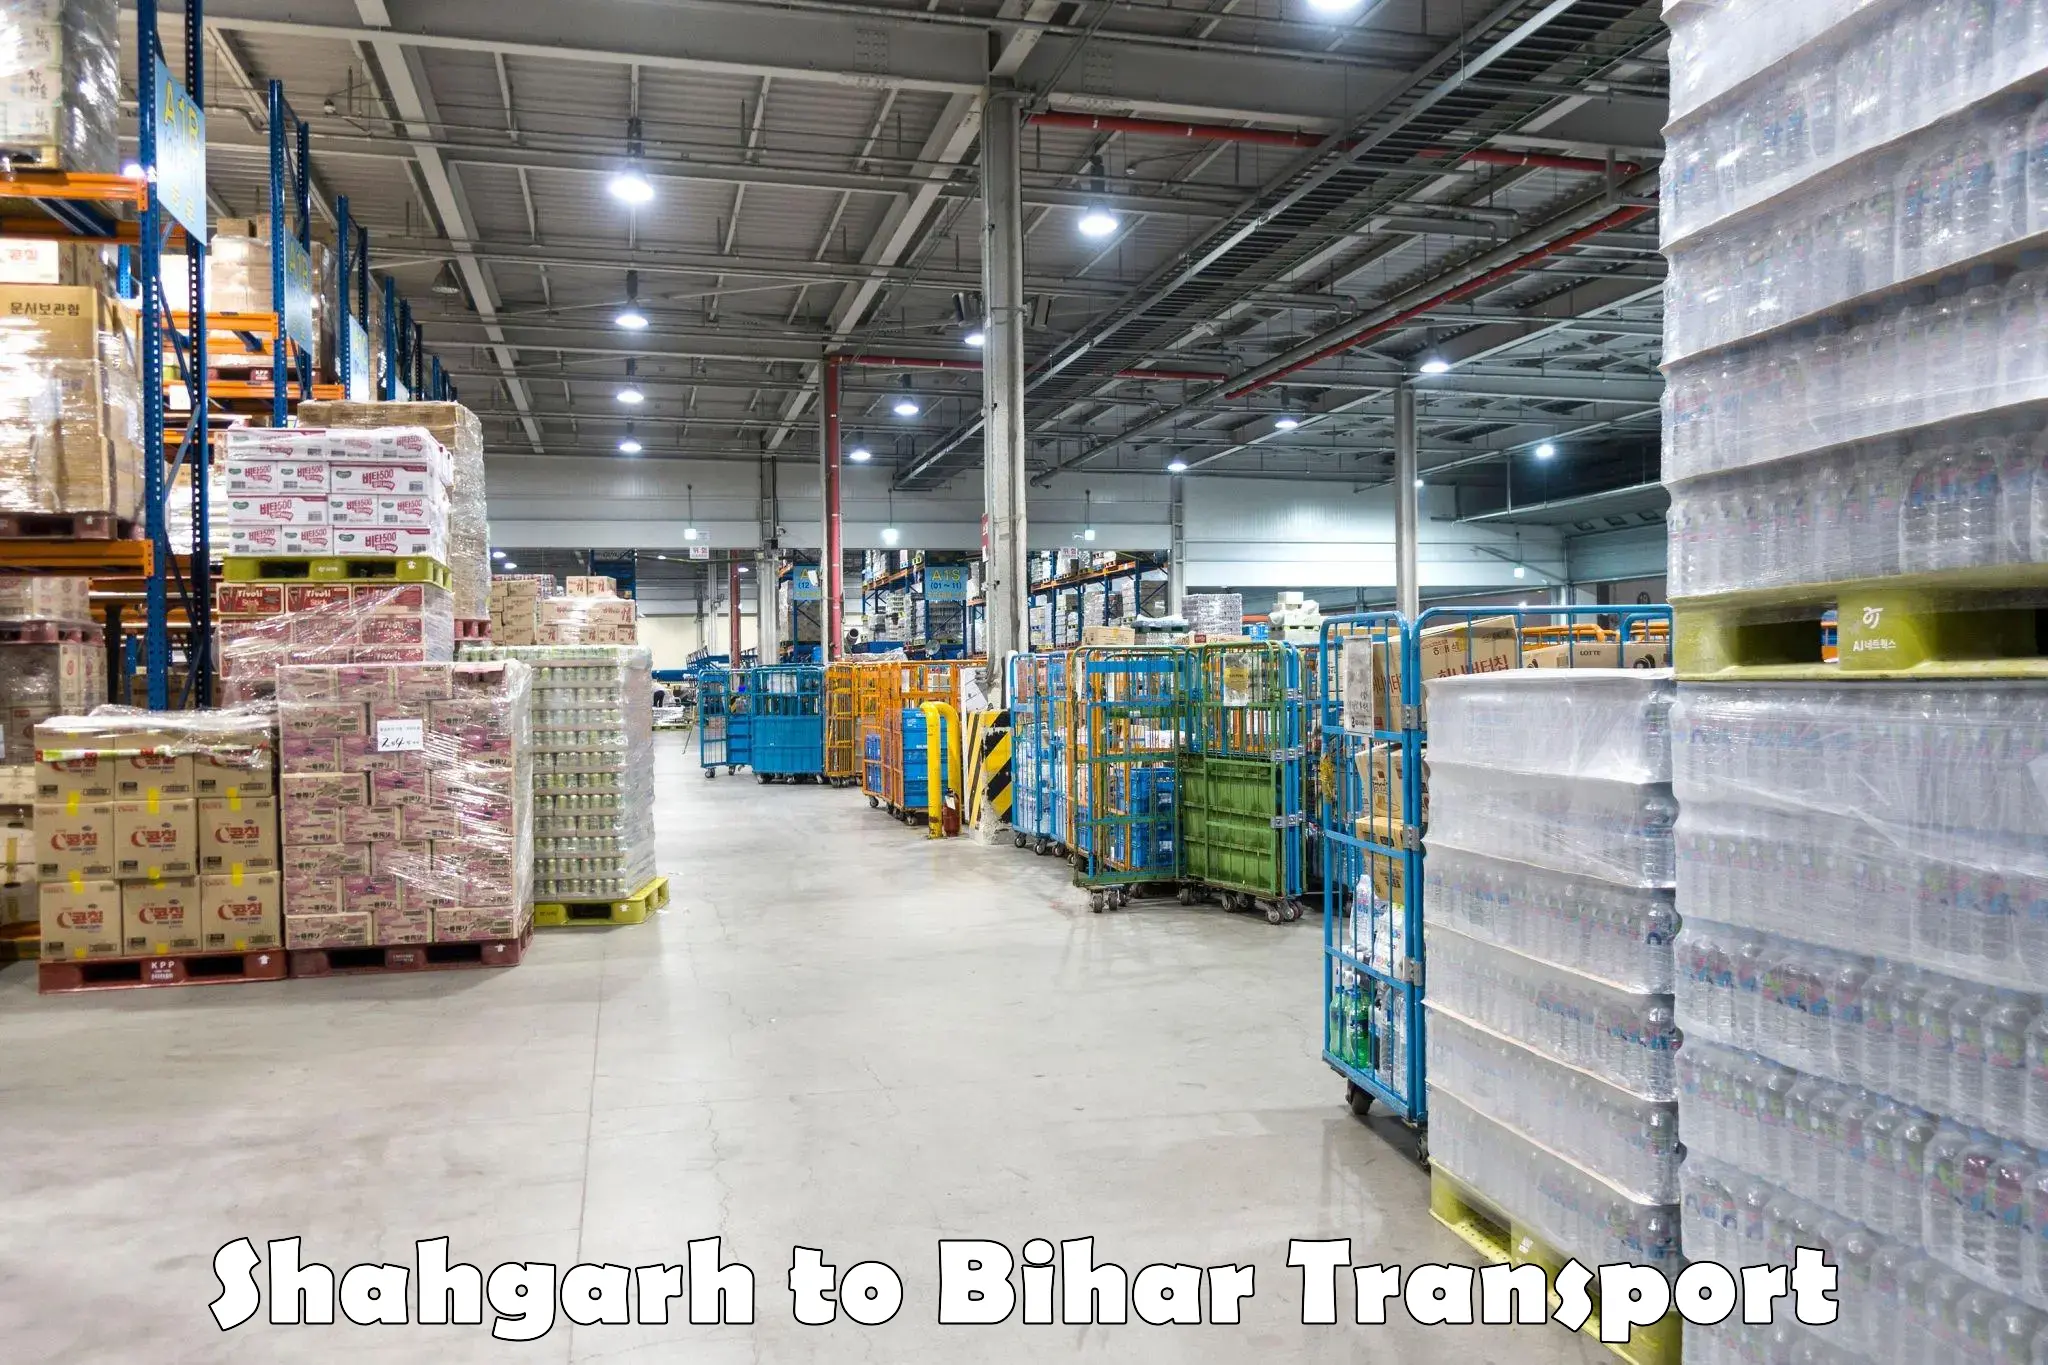 India truck logistics services Shahgarh to Mairwa